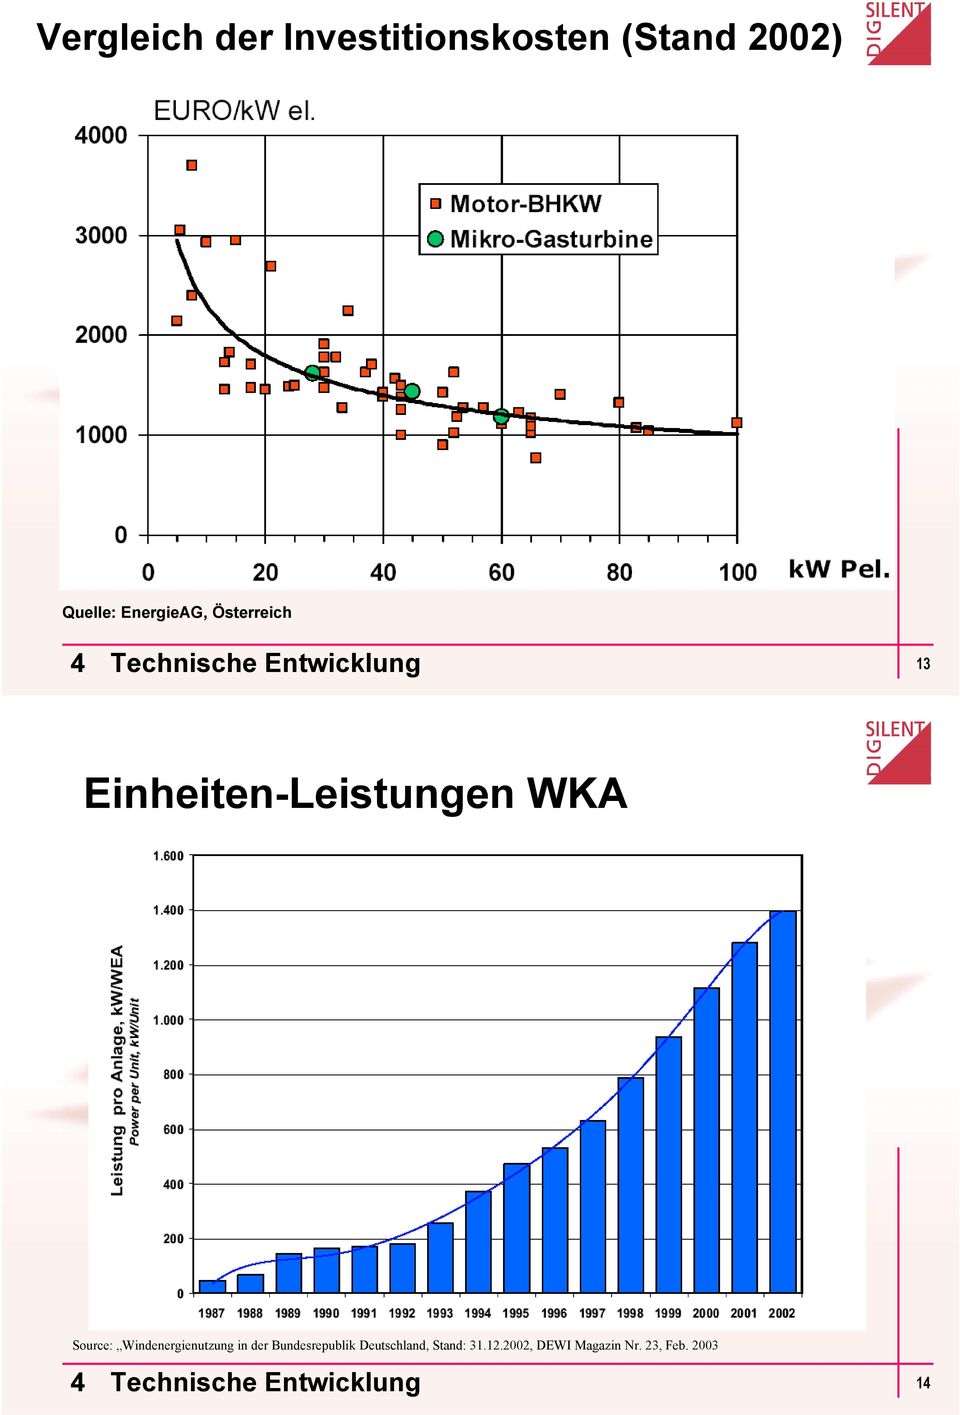 Source: Windenergienutzung in der Bundesrepublik Deutschland,